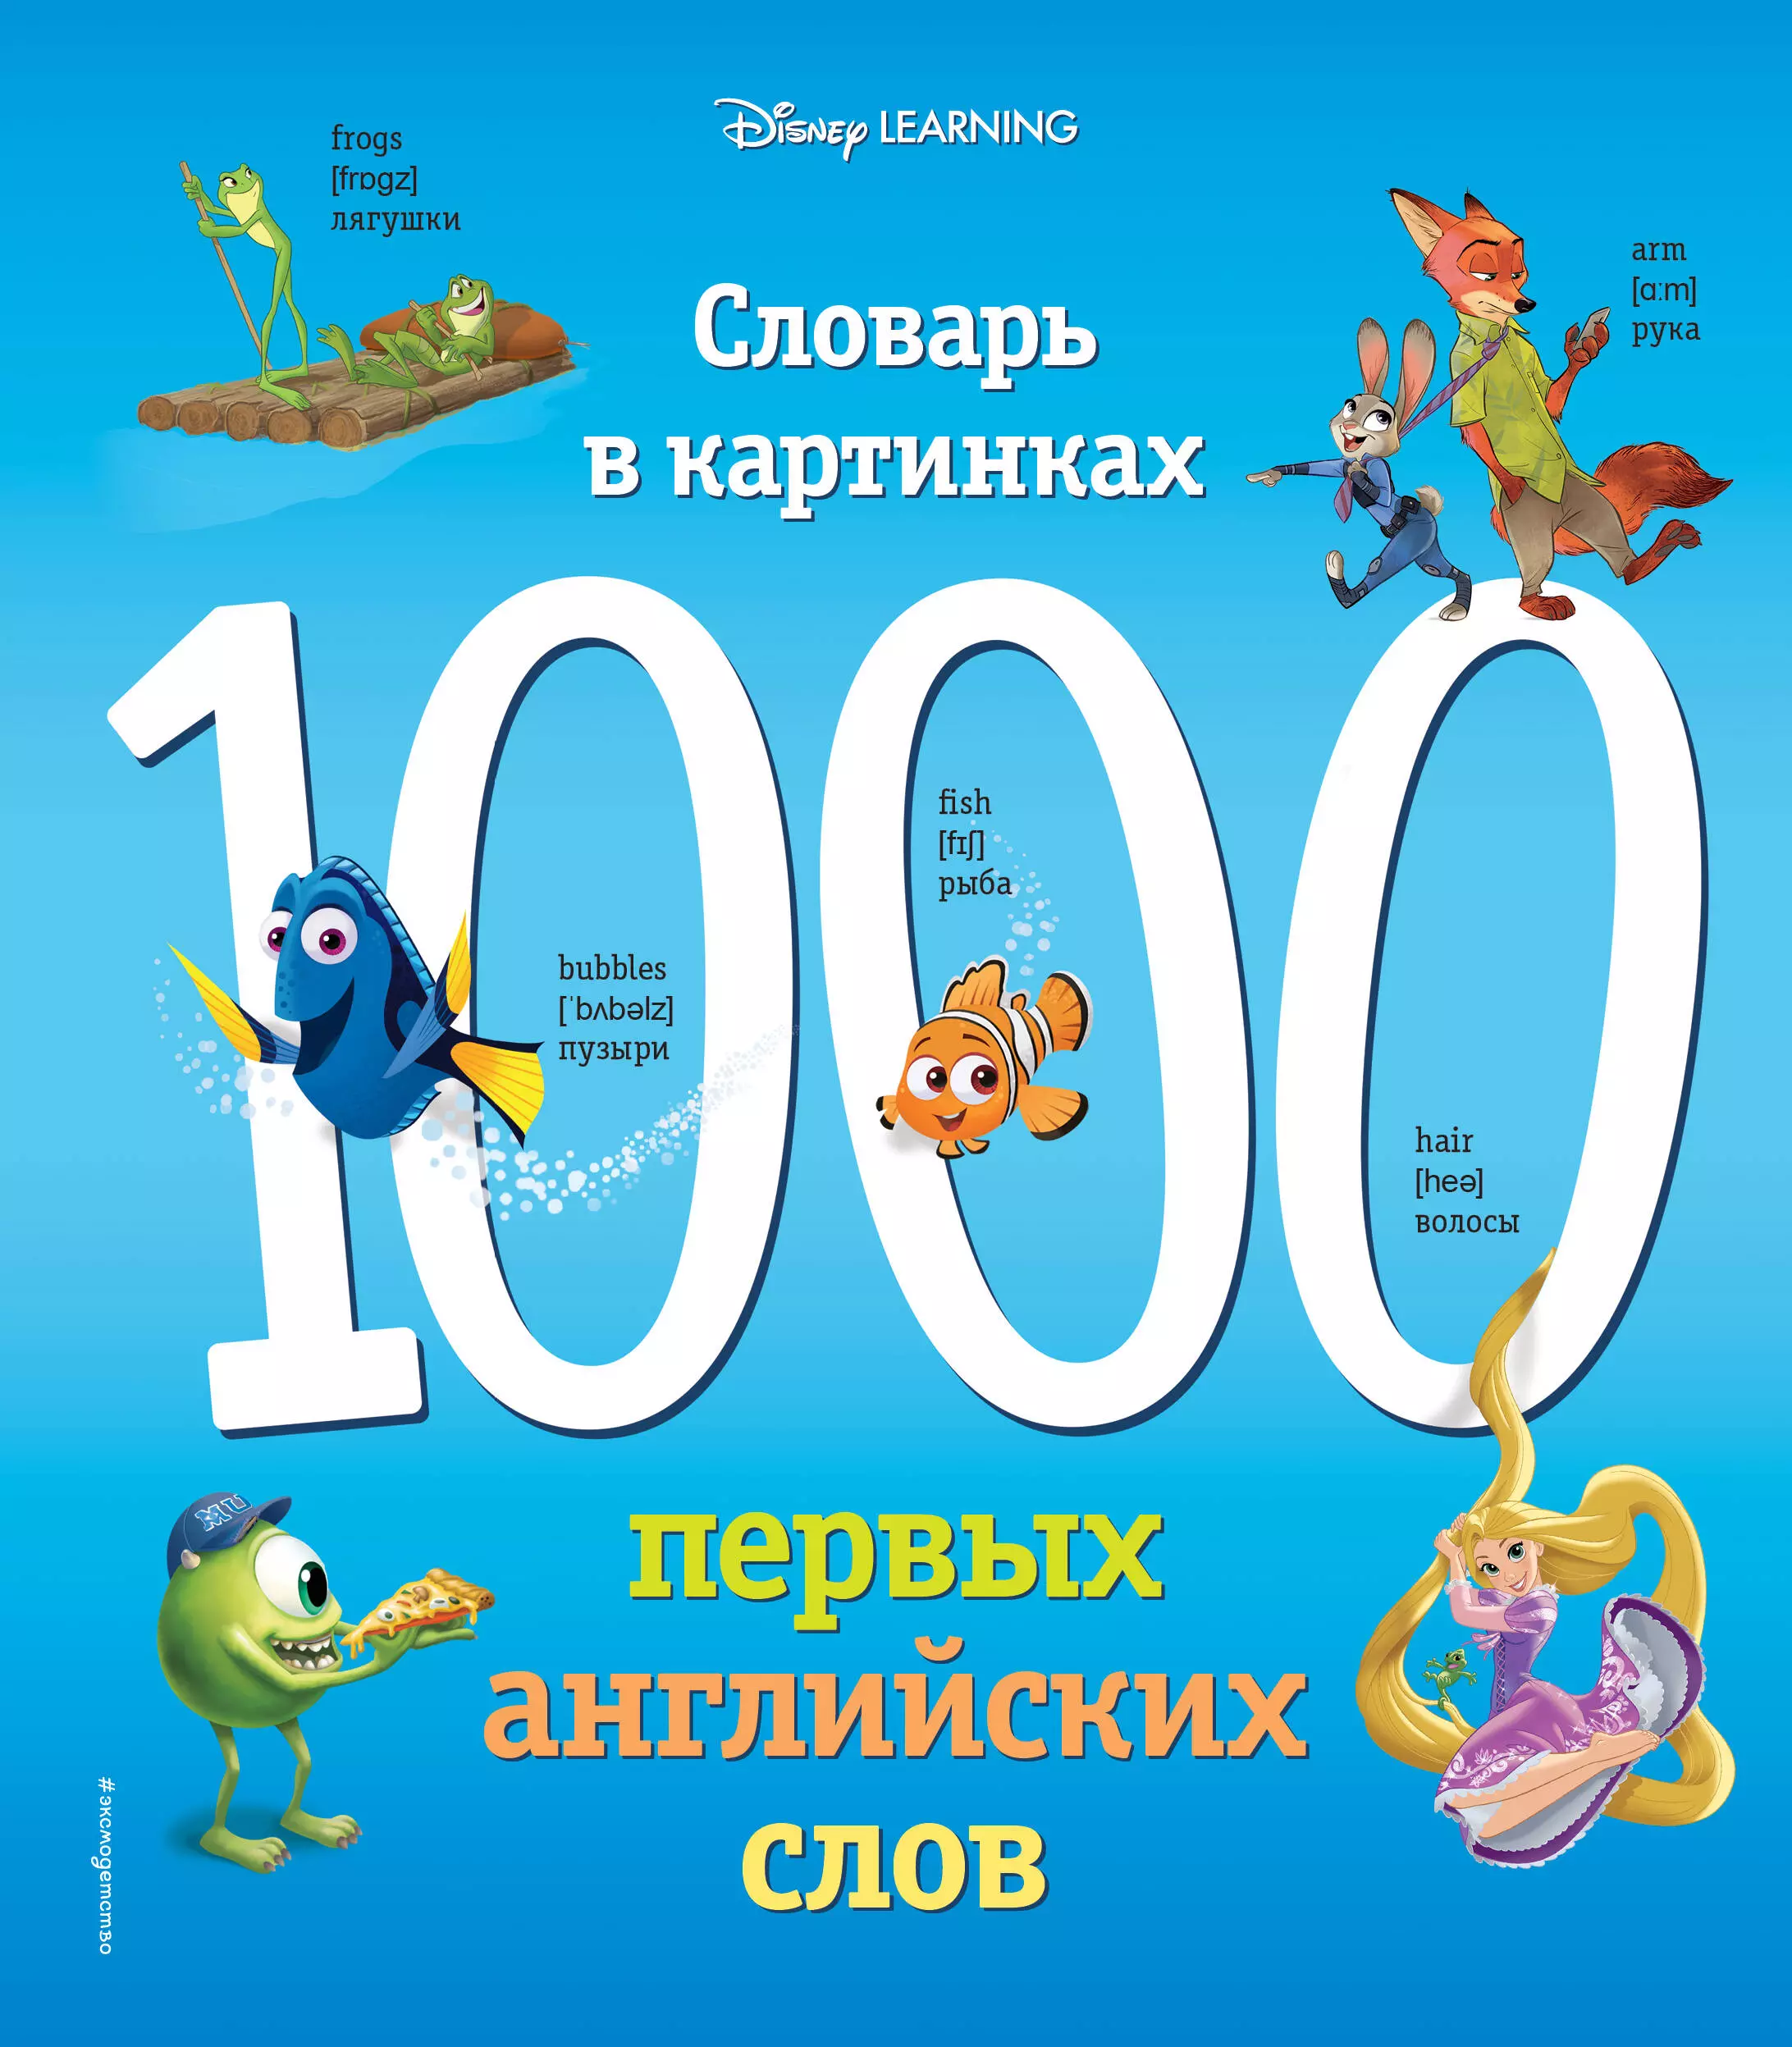 Вьюницкая Евгения - 1000 первых английских слов. Словарь в картинках (Disney)